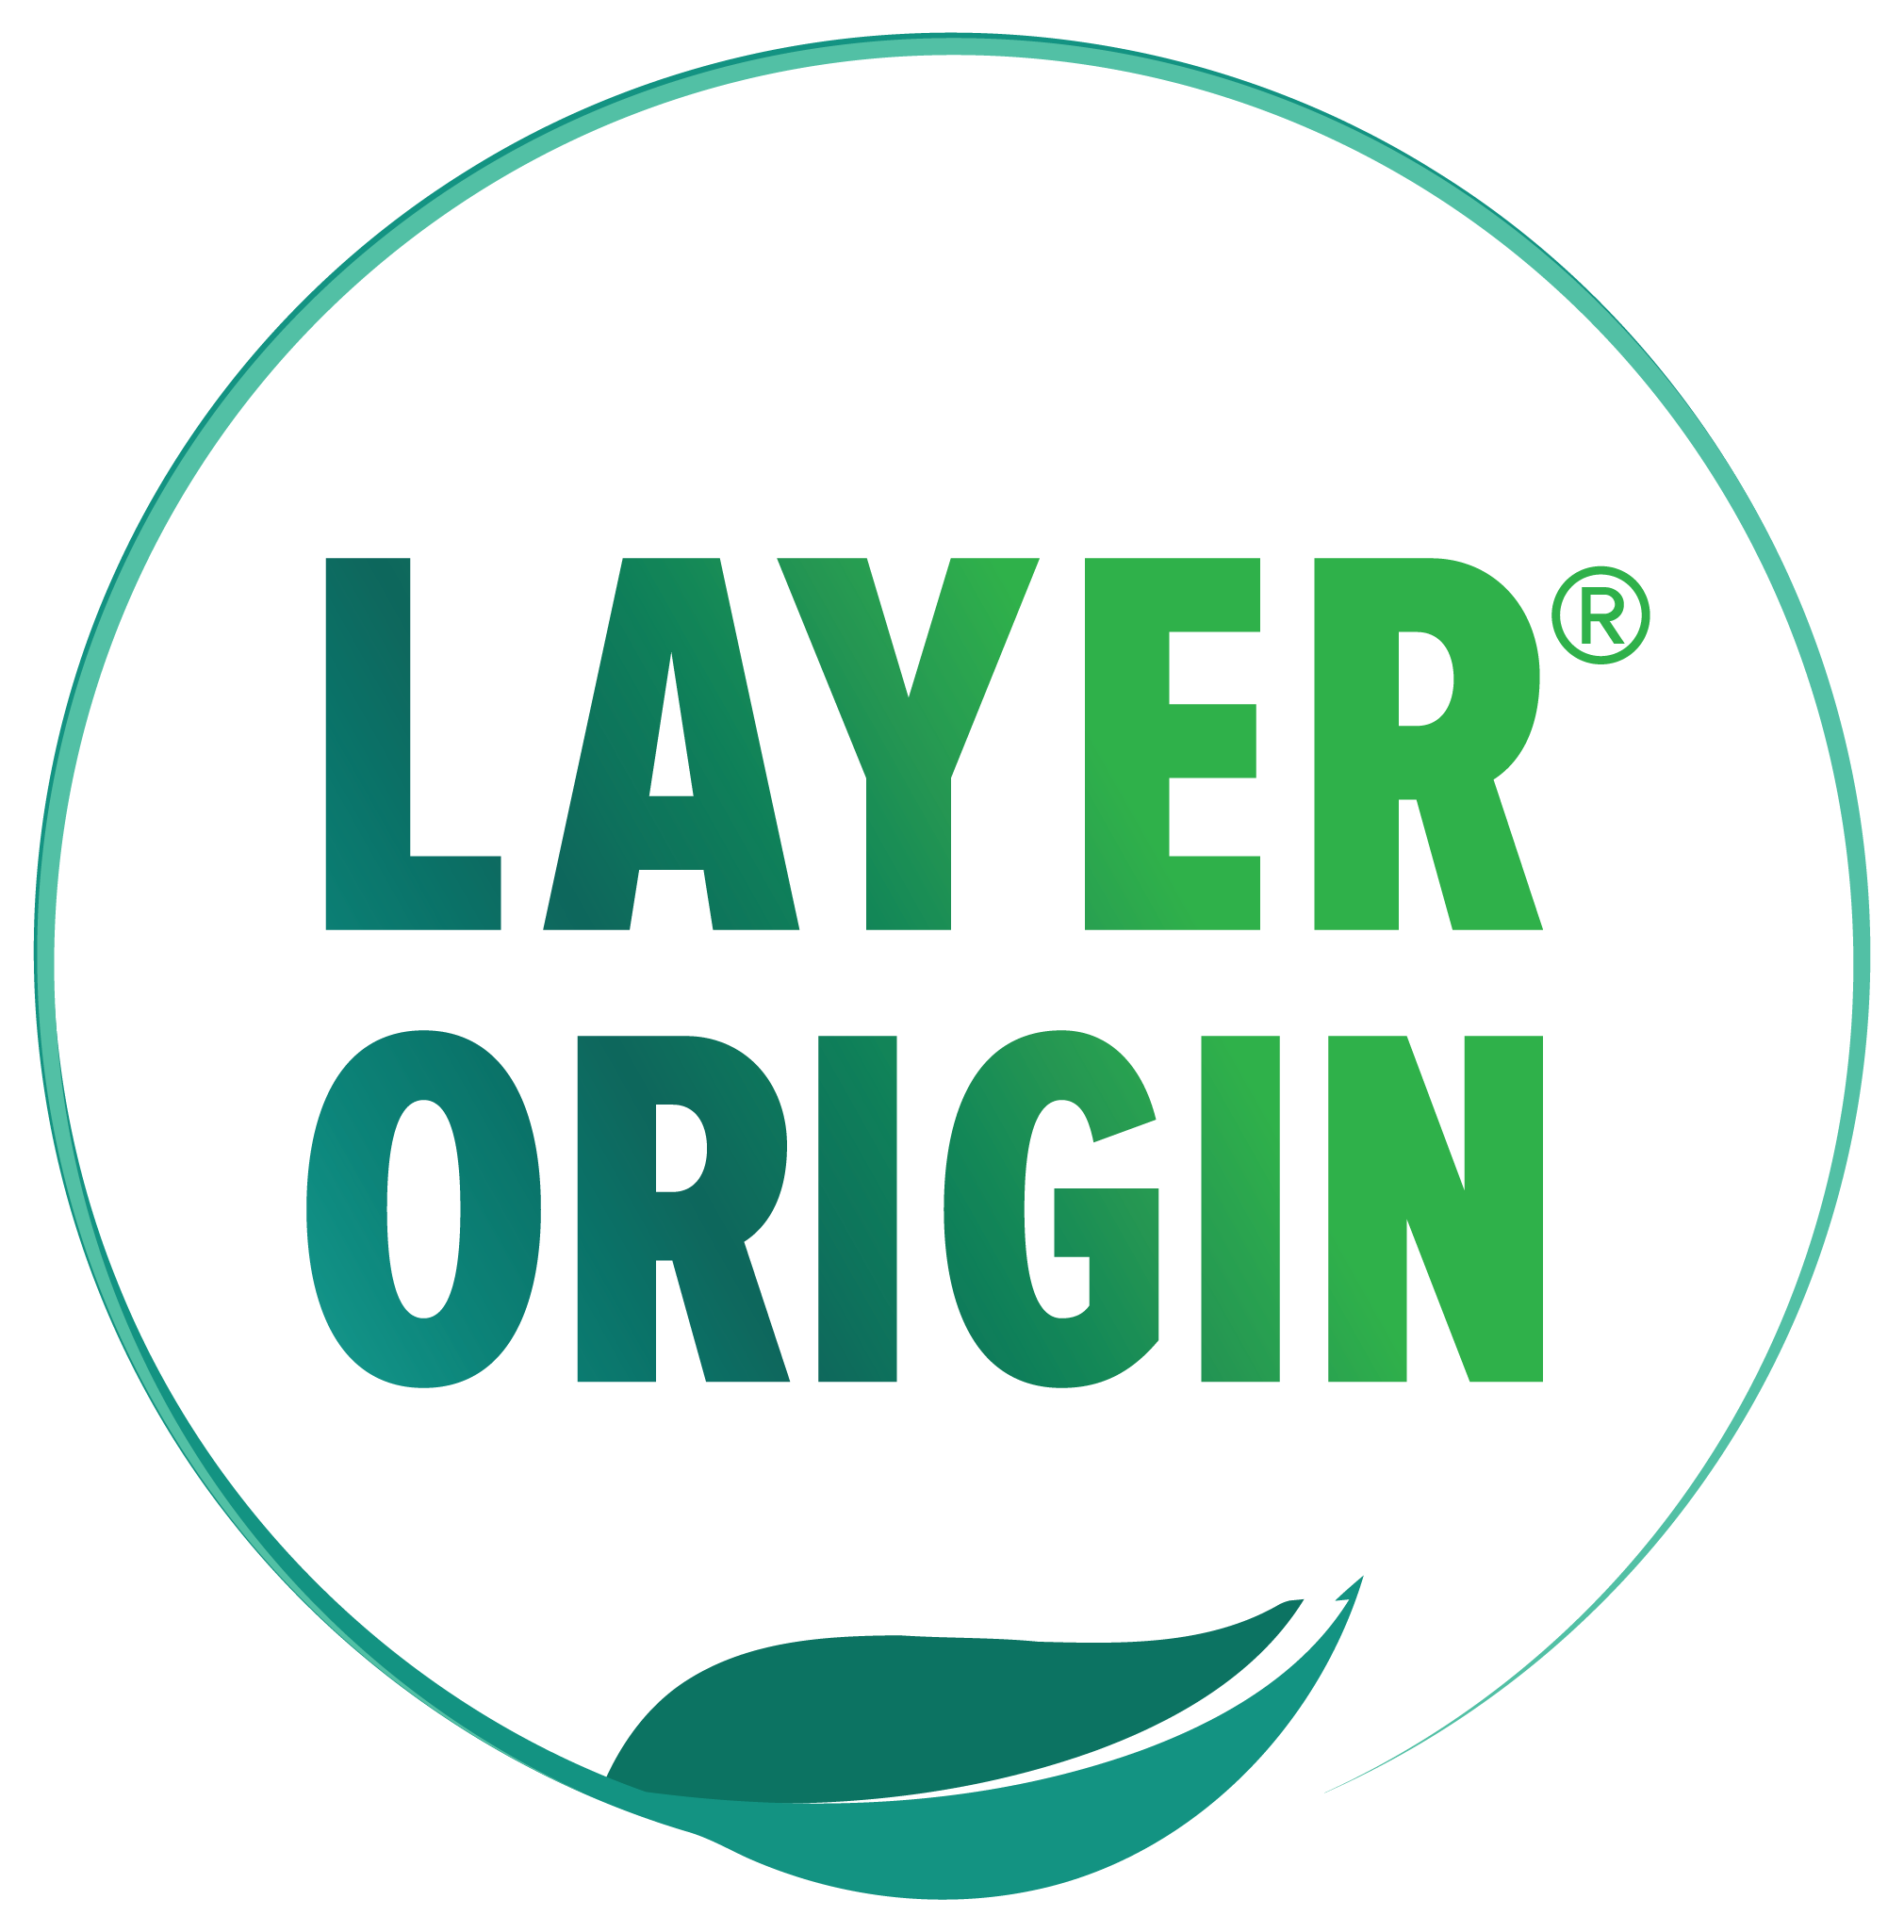 Layer Origin